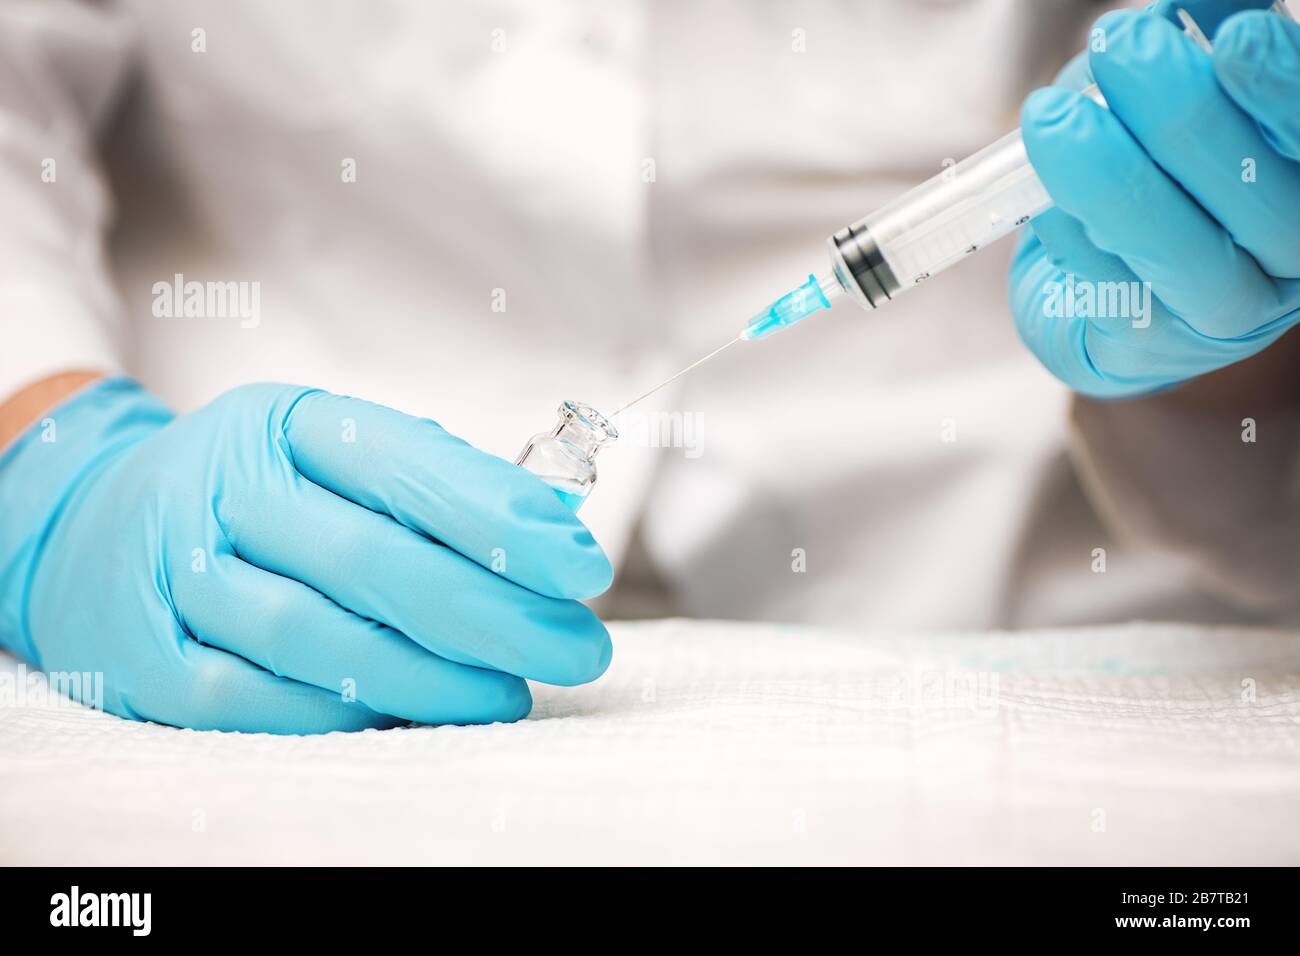 Le médecin ou l'infirmière mains dans des gants bleus contenant une seringue et une injection de vaccin. Concept de médecine. Banque D'Images